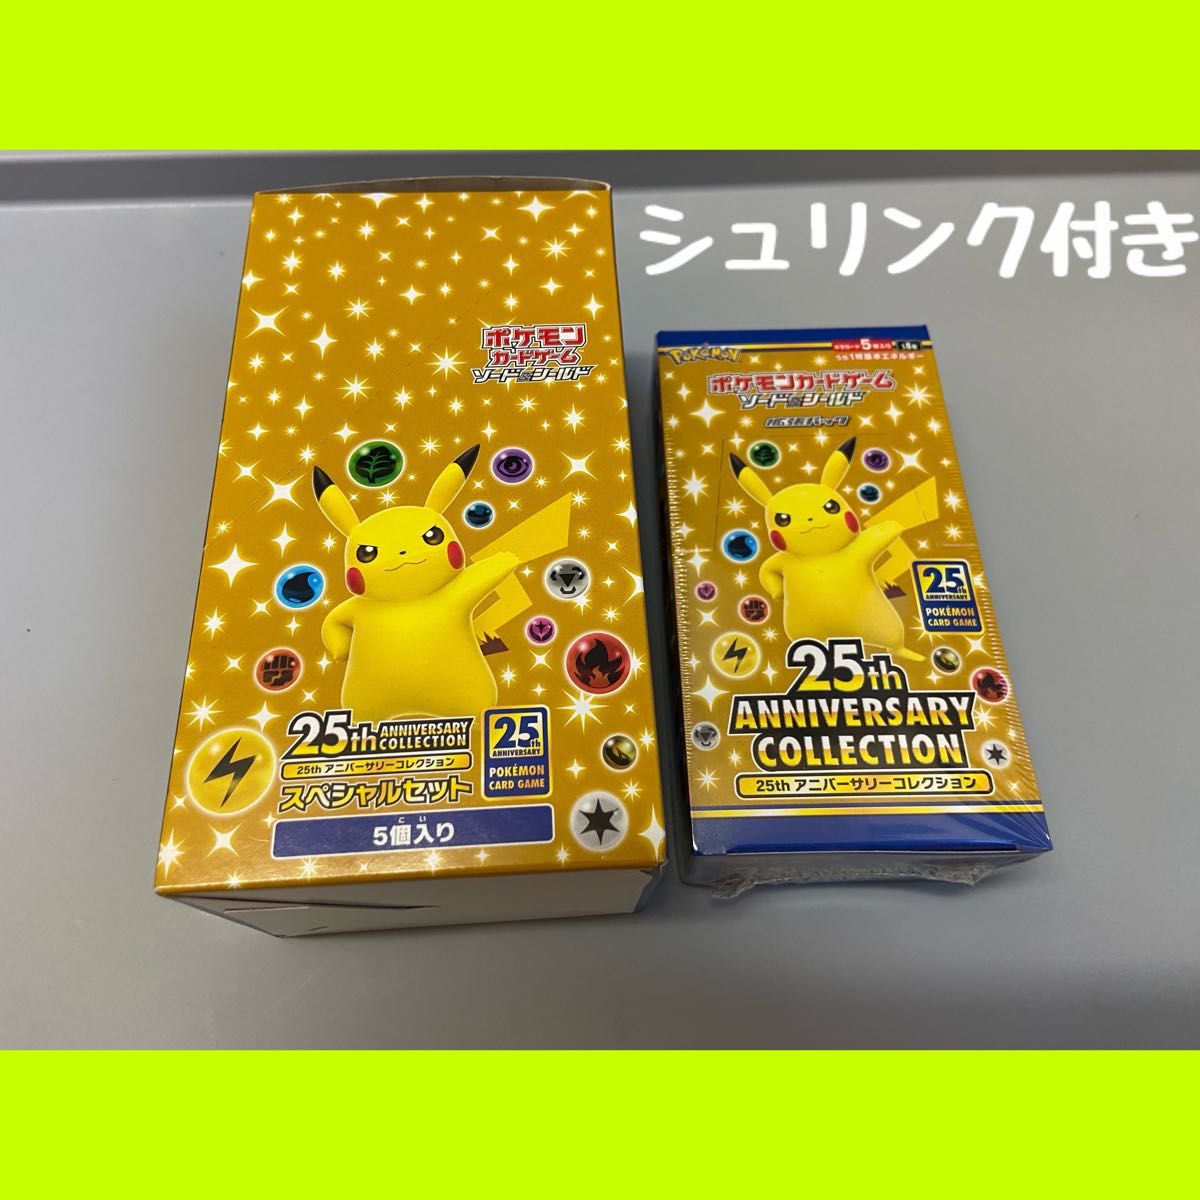 25th anniversary collection 1ボックス・スペシャルセット1ボックス